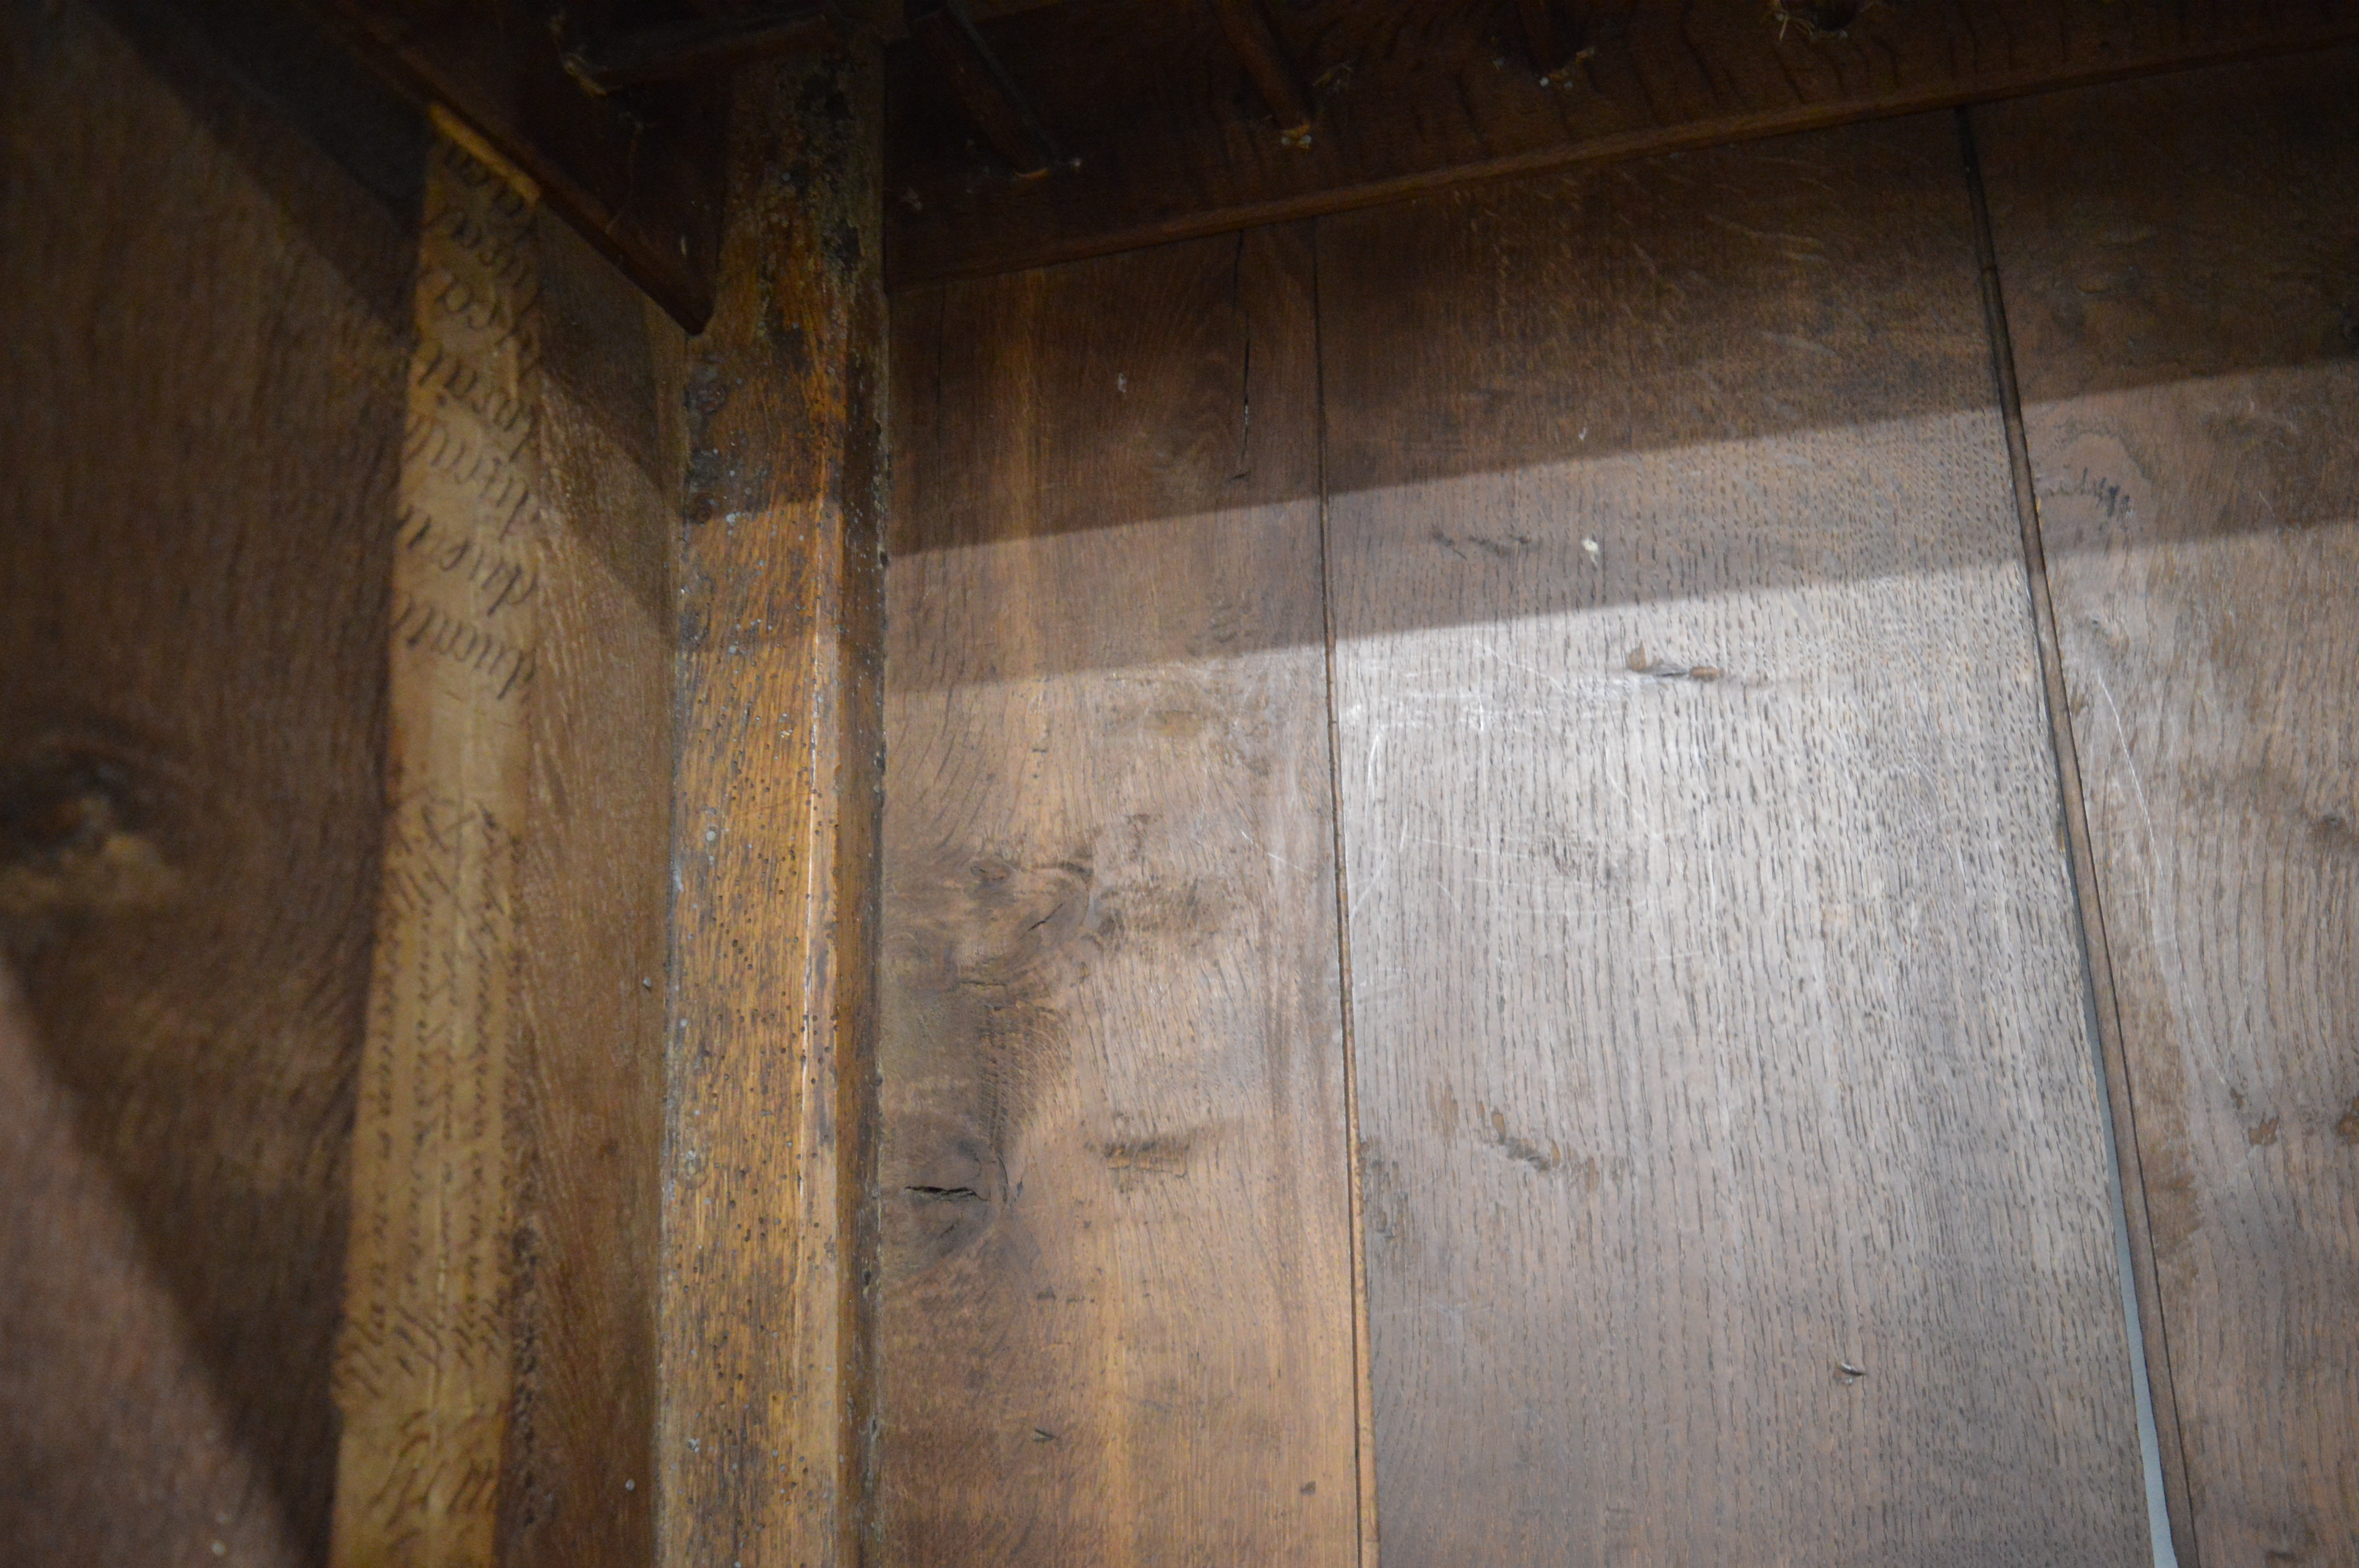 Georgian oak paneled cupboard / wardrobe Ht 198cm L 182cm D 55cm - Image 3 of 5